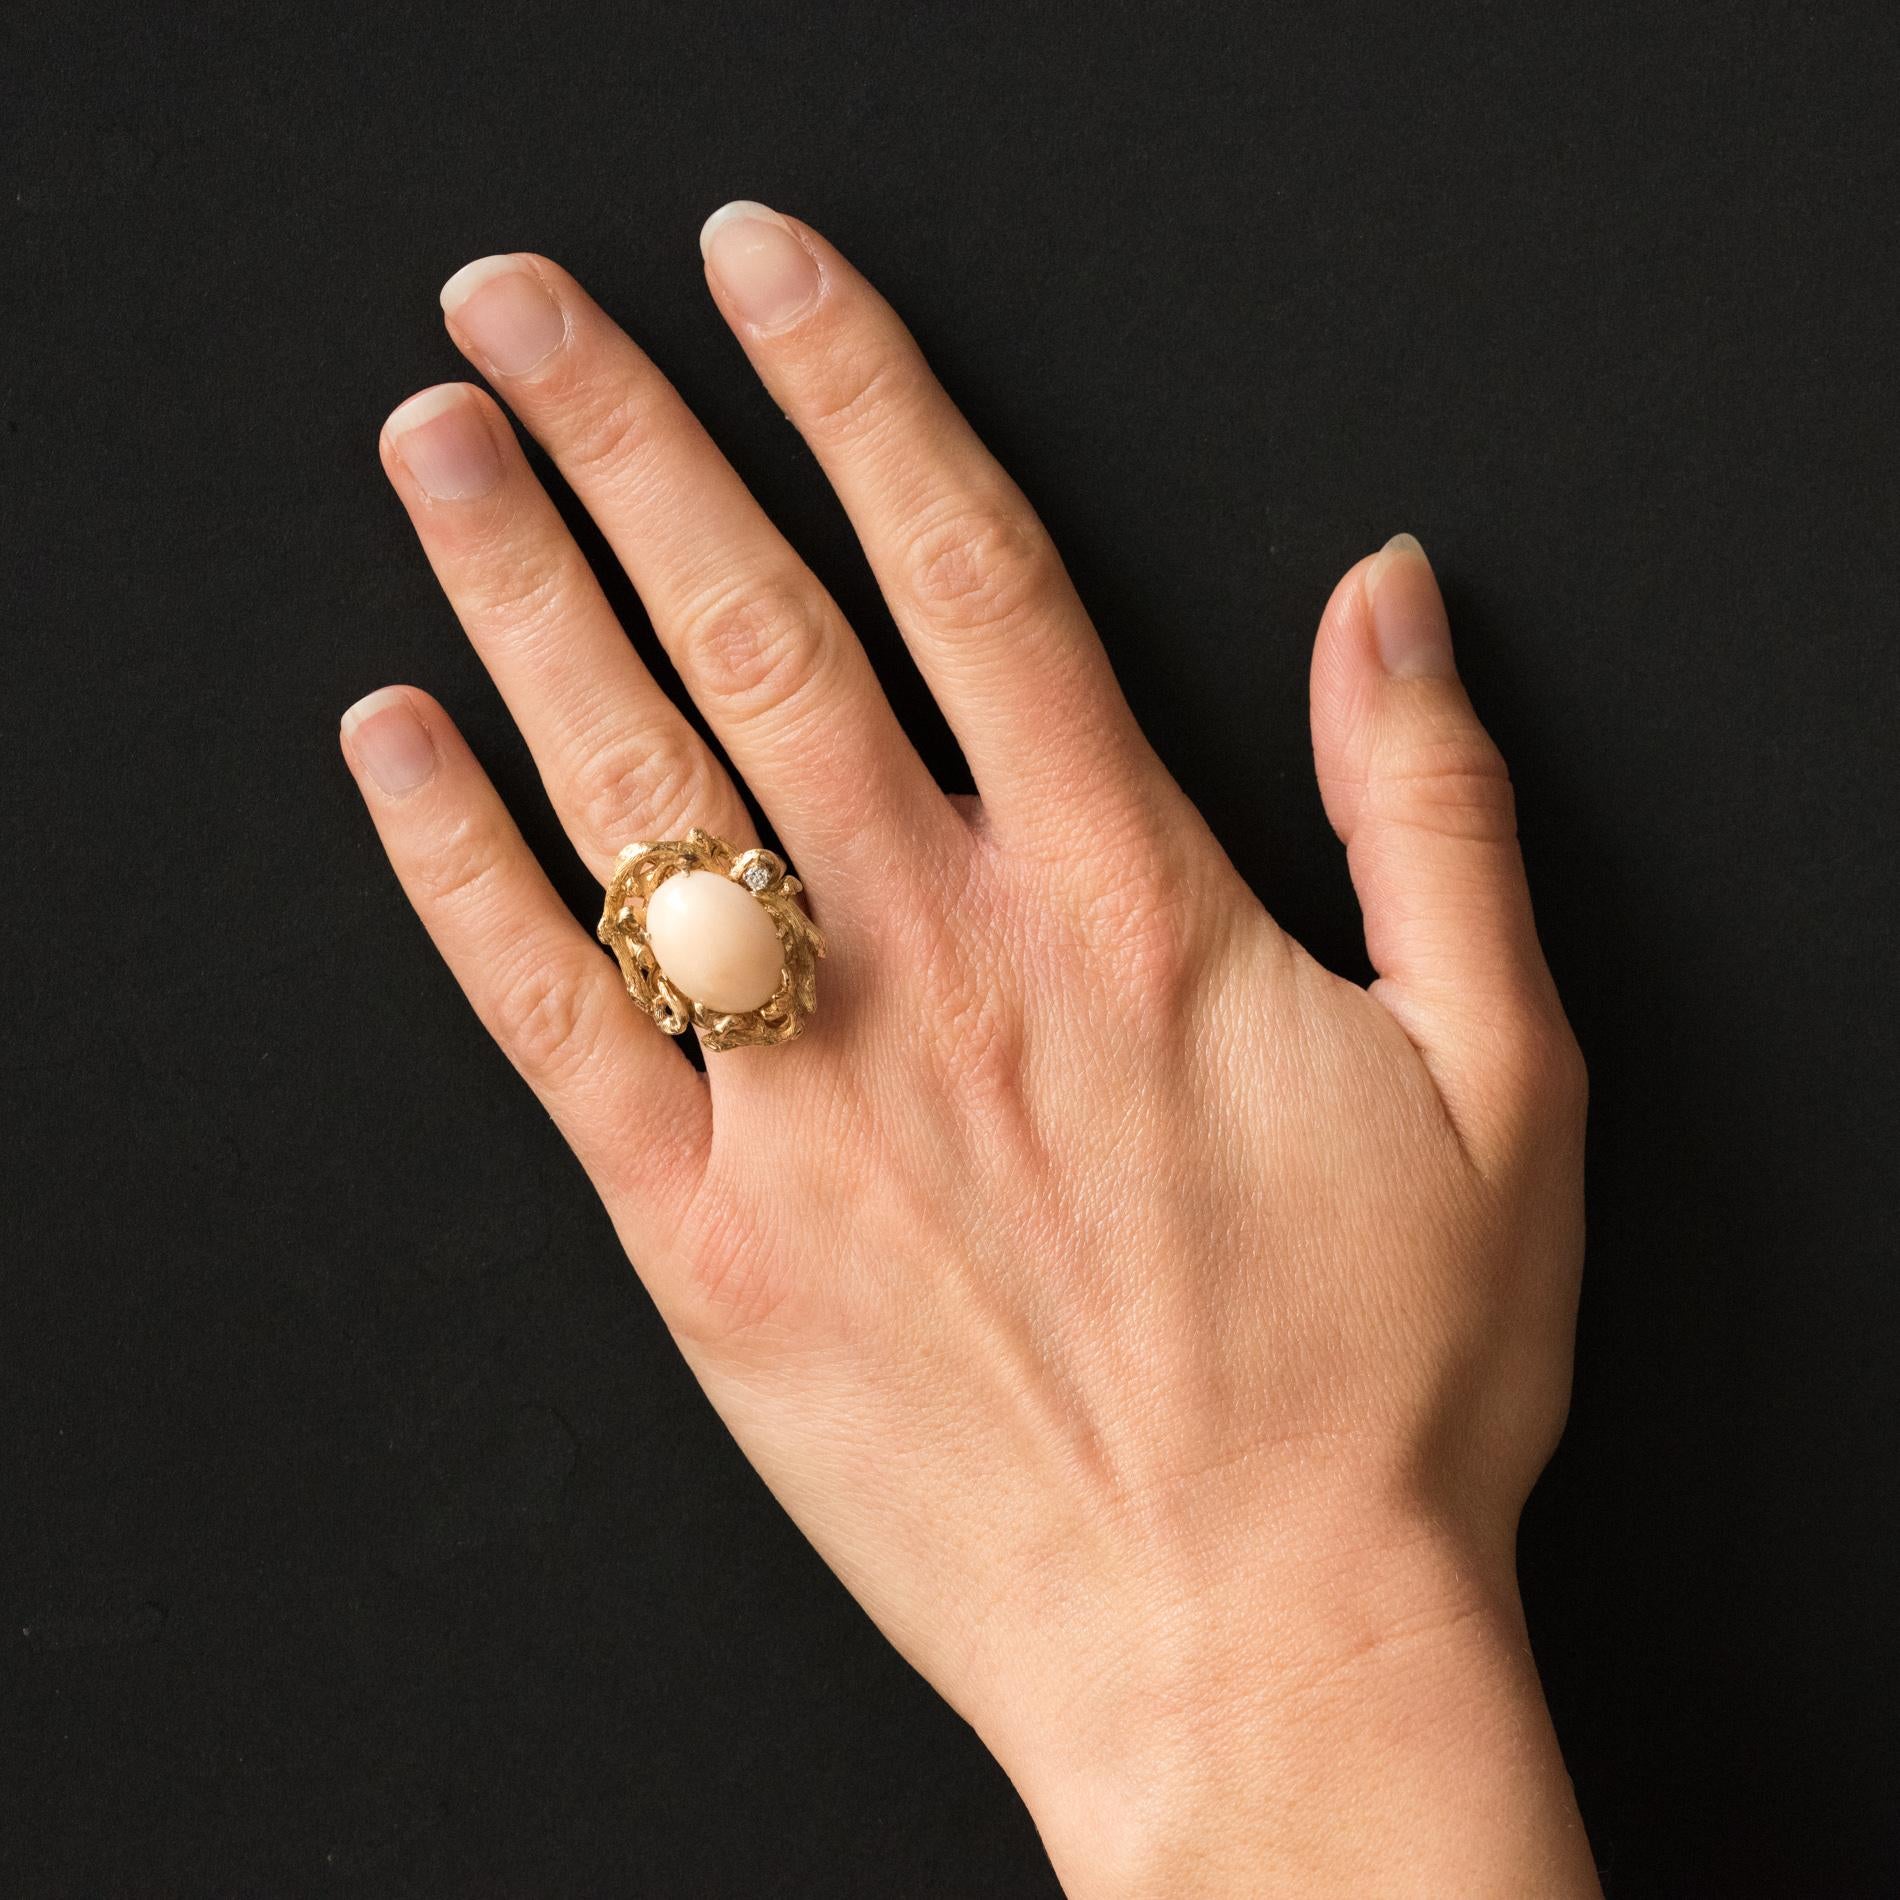 Ring aus 14 Karat Gelbgold.
Dieser schöne Ring mit asymmetrischen Linien ist mit den Krallen eines Engelshaut-Korallen-Cabochons in einem knorrigen Dekor besetzt, das wie ein Ast gemeißelt ist, der den Edelstein einrahmt. Ein Diamant im